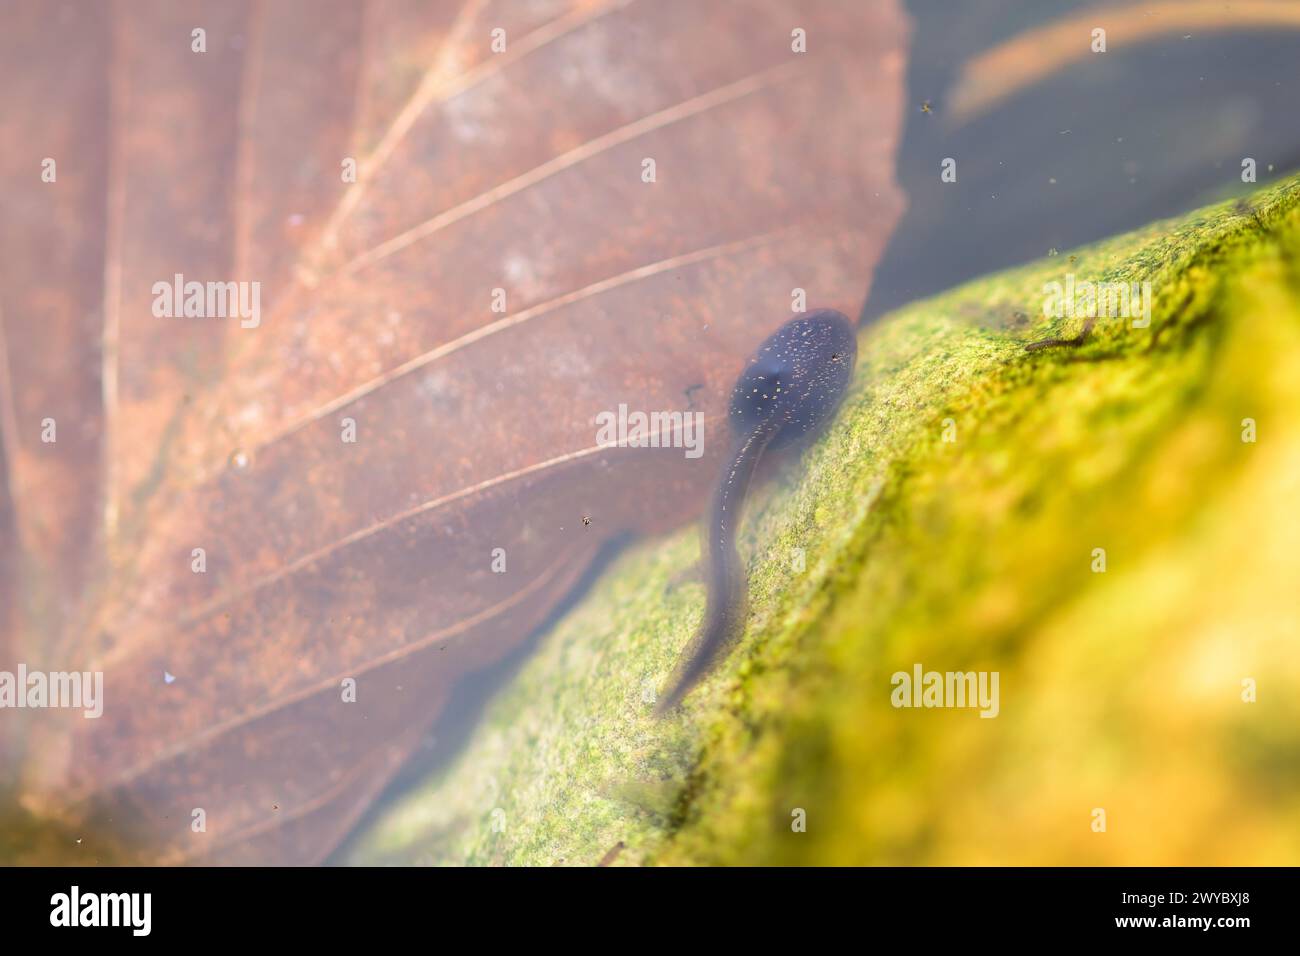 Un singolo tadpole che nuota accanto a una roccia e sopra una foglia marrone morta, la vita dello stagno Foto Stock